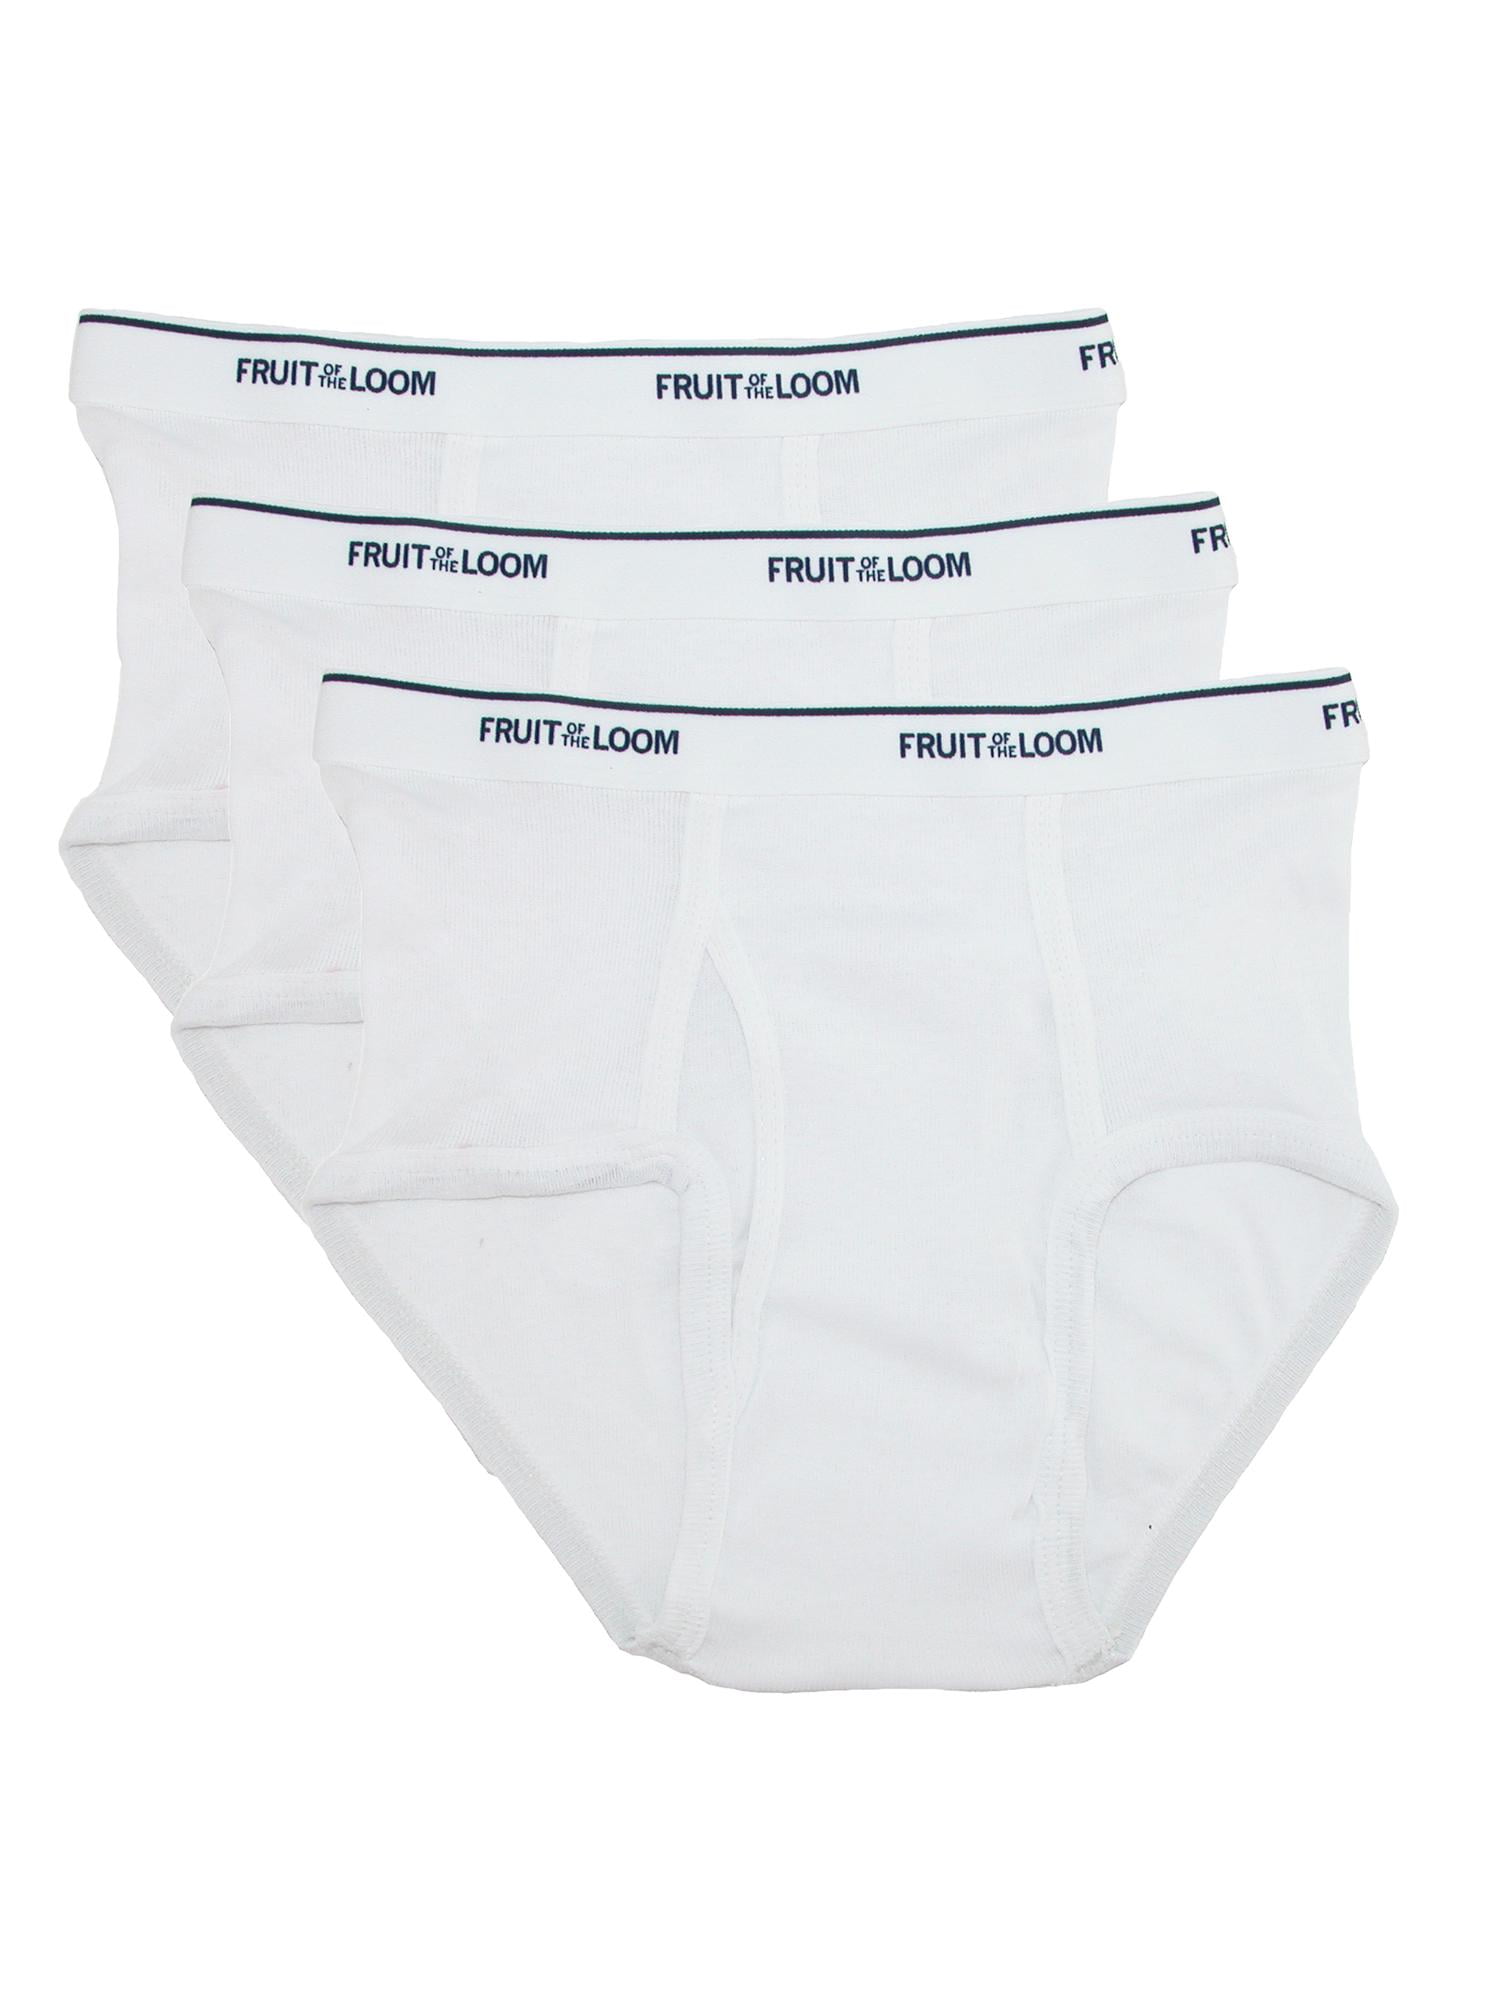 Men's Clothing 3 pc pack Men White Briefs Cotton Underwear Old School ...